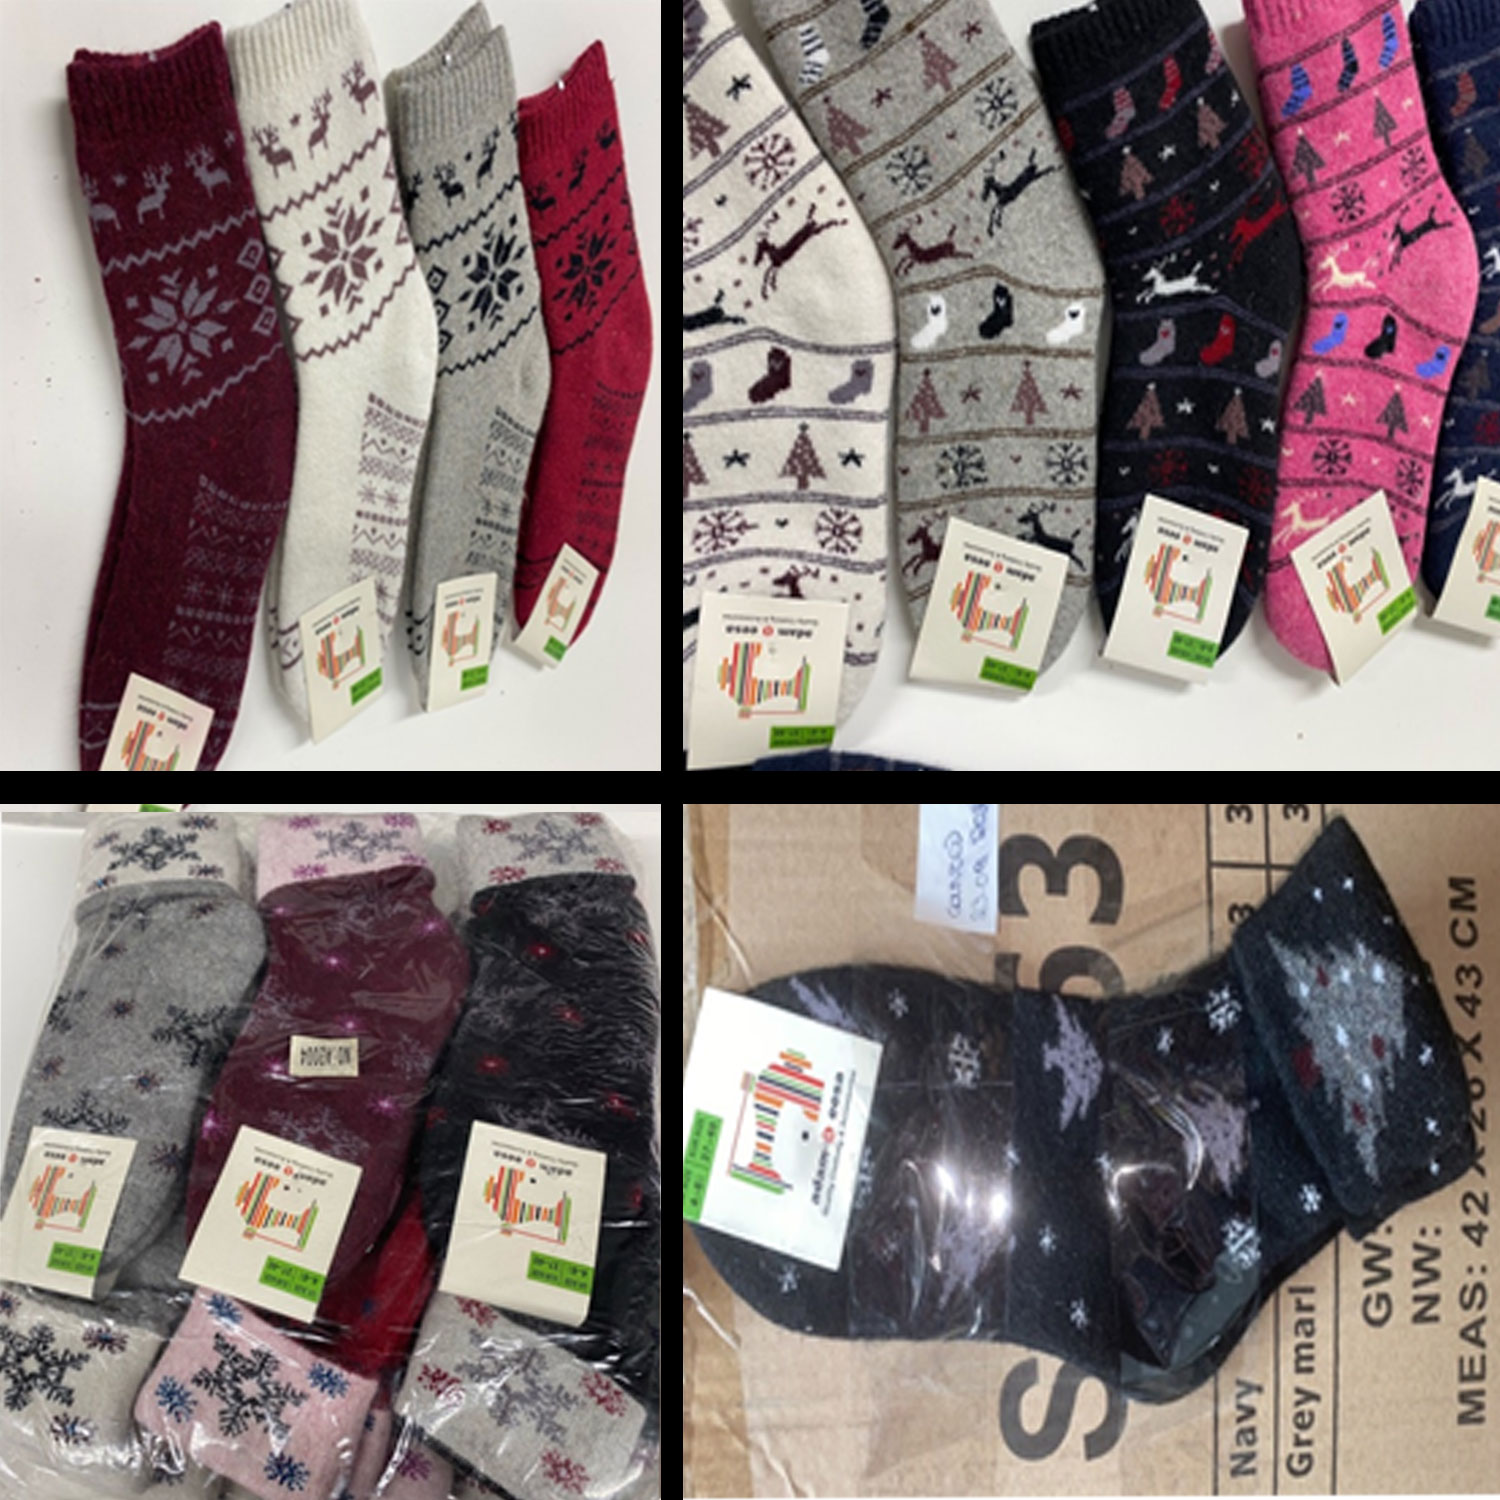 30 Dozens of New Womens Christmas Socks for Resale Joblot